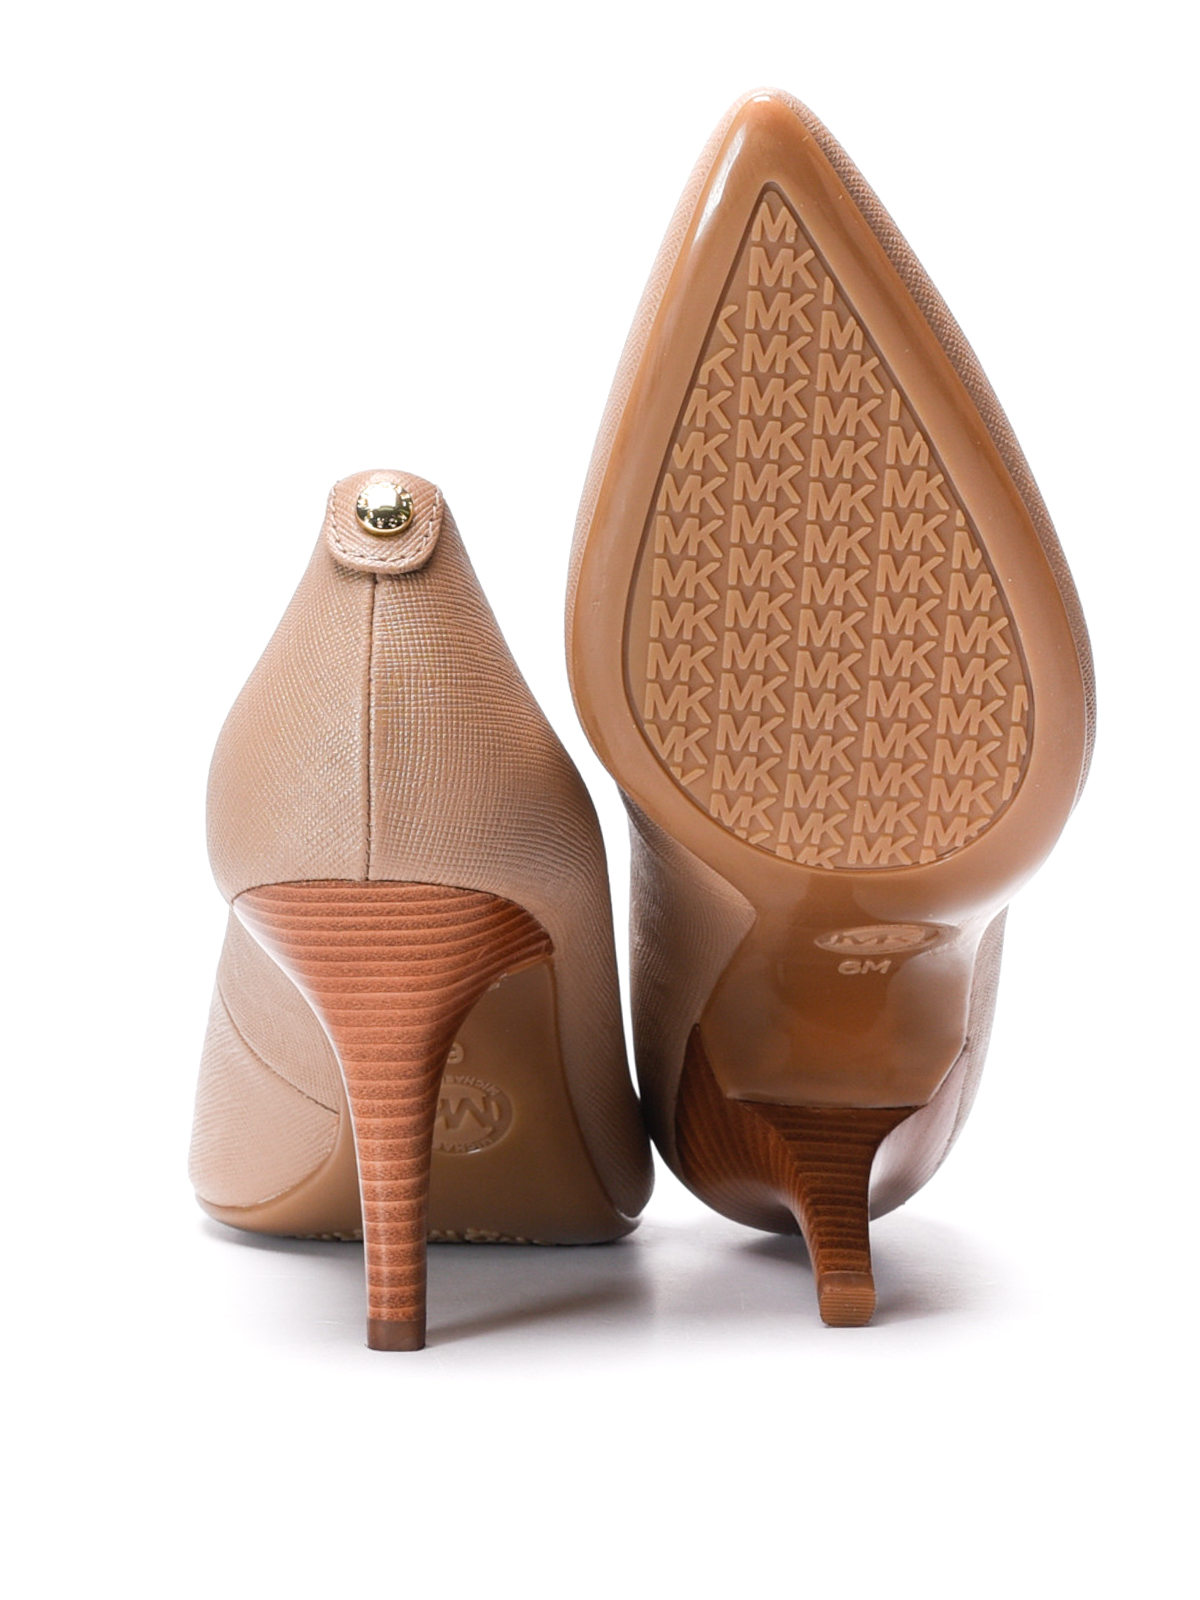 Court shoes Michael Kors - Flex leather pumps